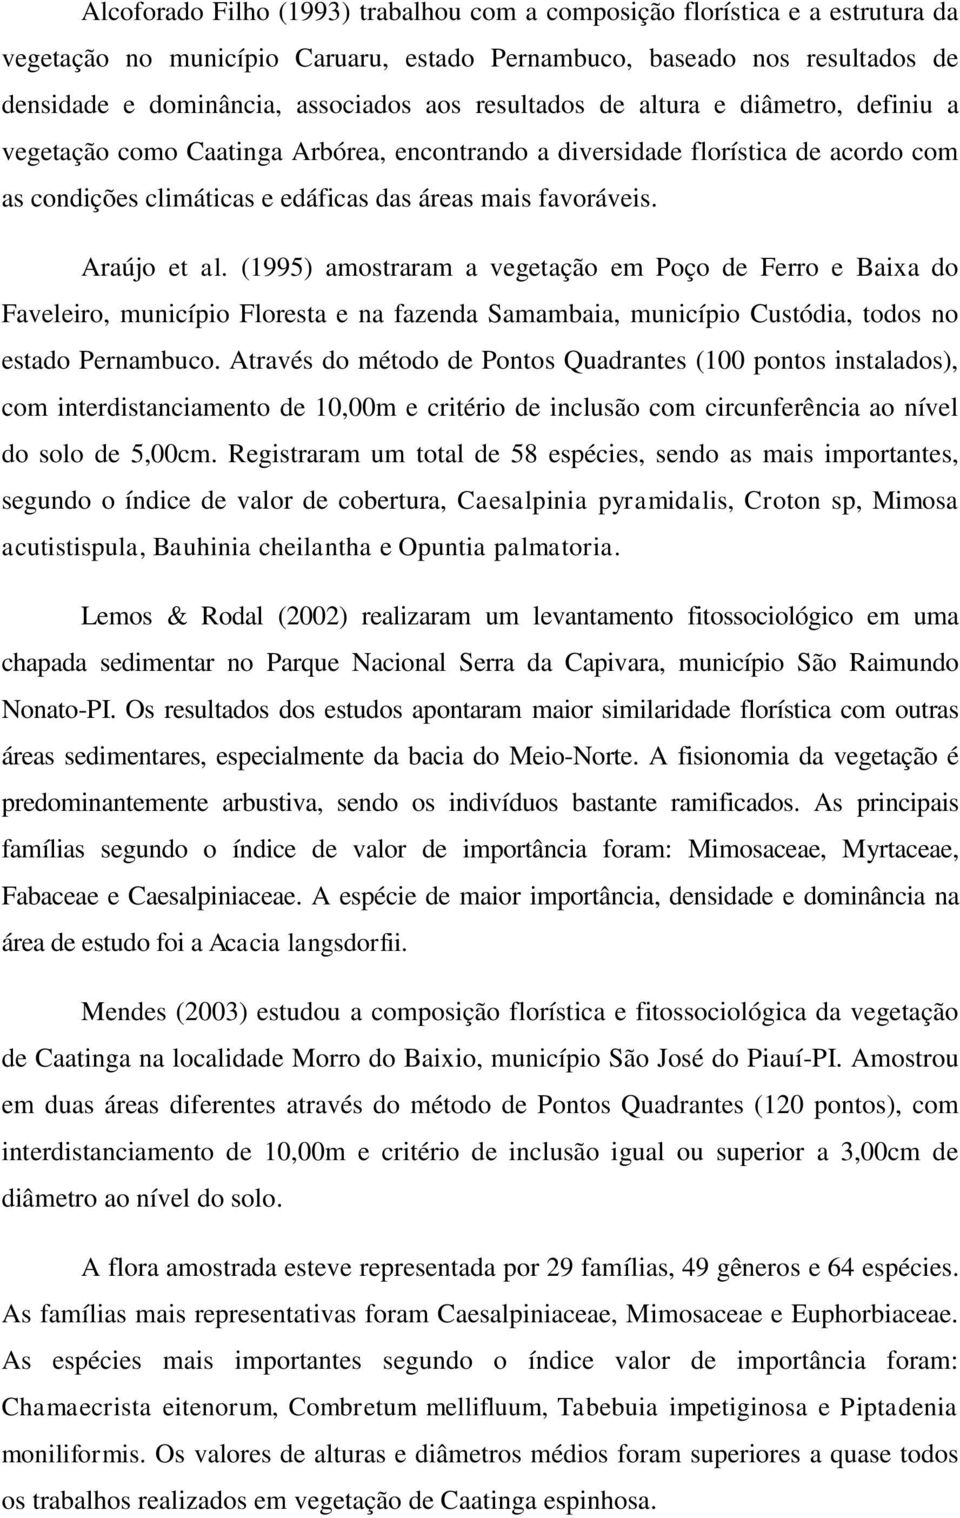 Araújo et al. (1995) amostraram a vegetação em Poço de Ferro e Baixa do Faveleiro, município Floresta e na fazenda Samambaia, município Custódia, todos no estado Pernambuco.